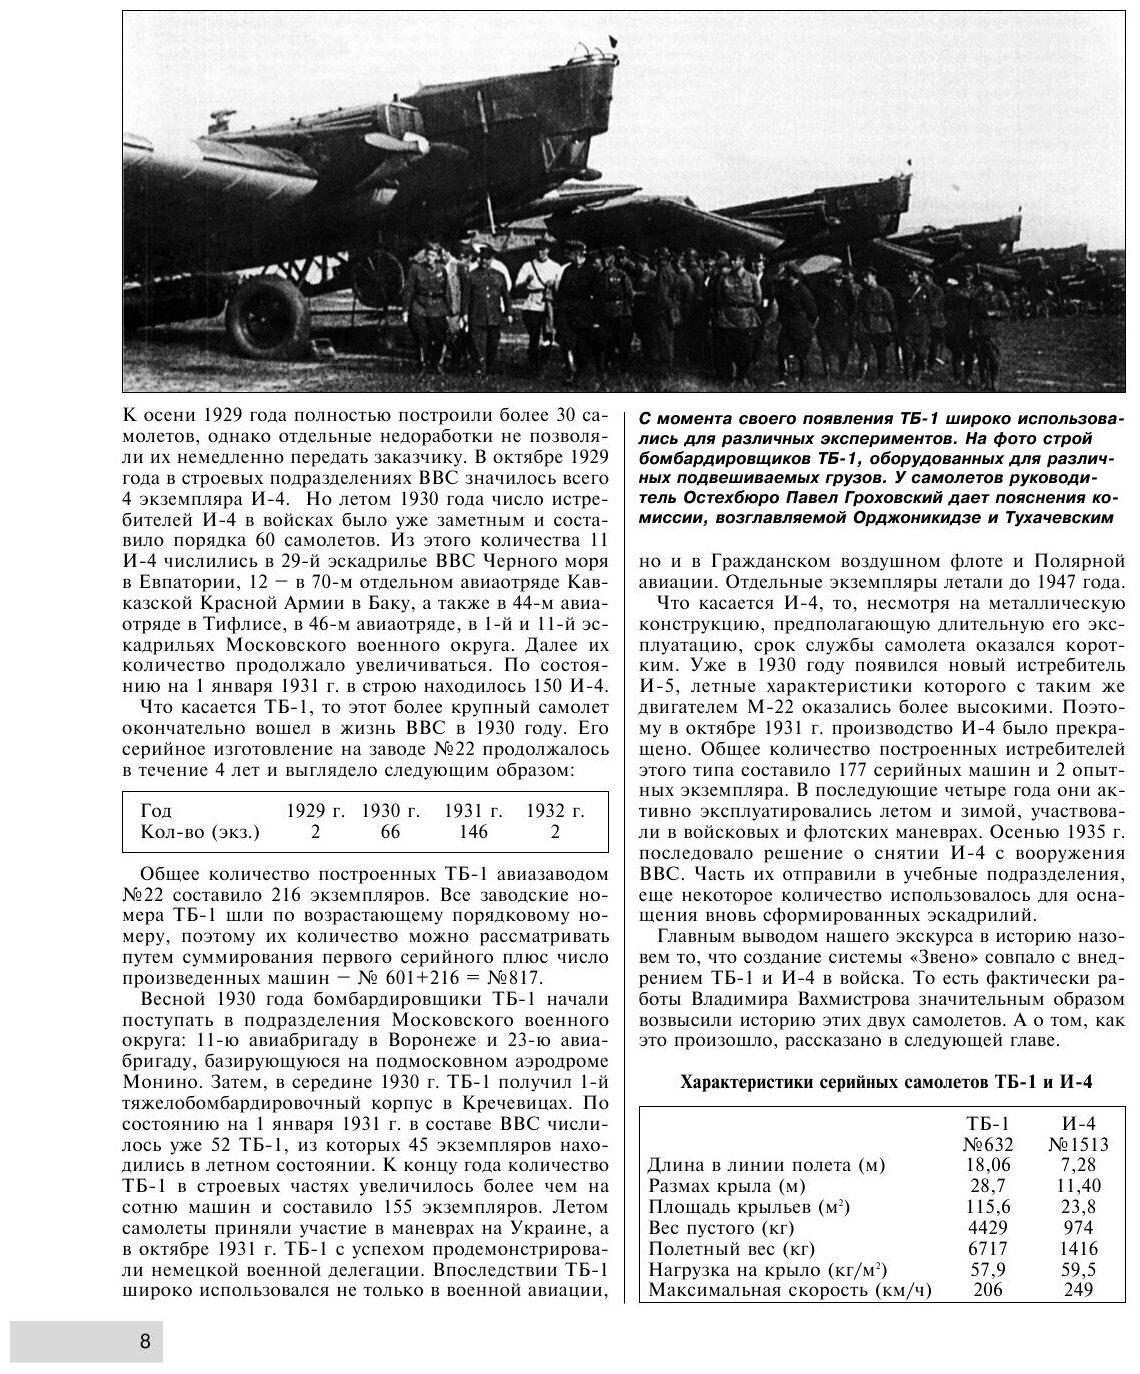 Летающие авианосцы Сталина. Все модификации и проекты «Звена» Вахмистрова - фото №8